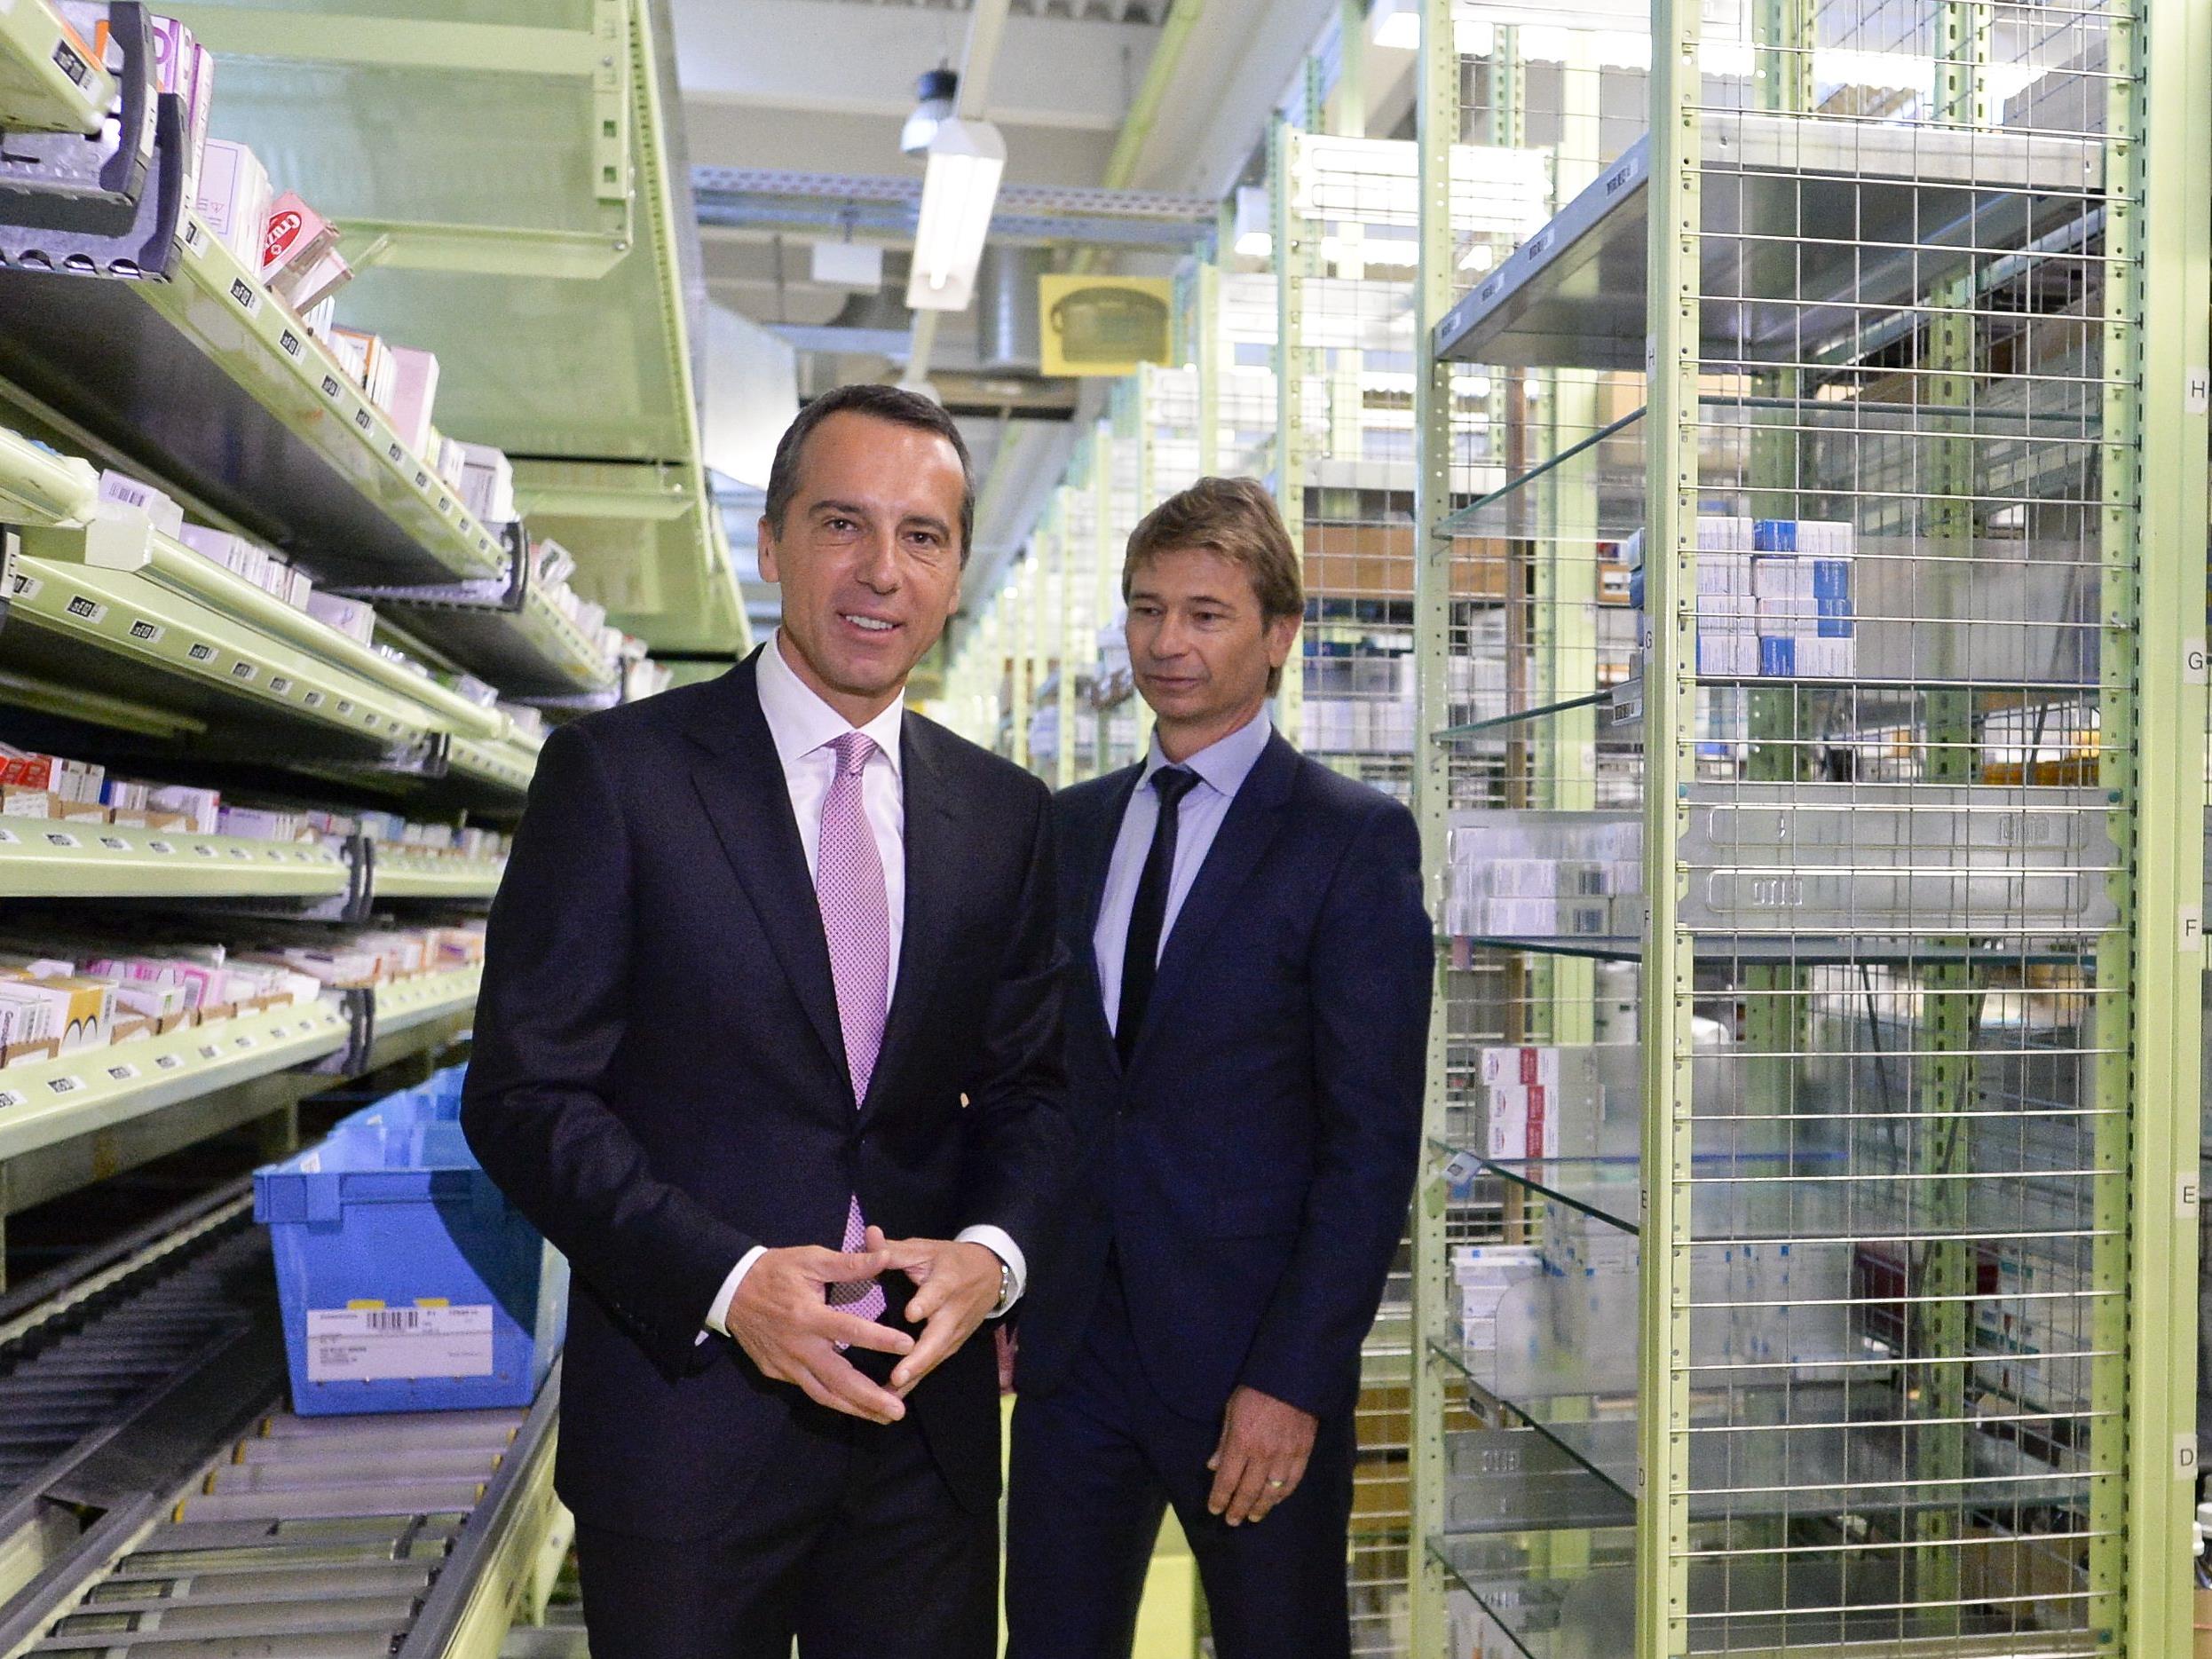 Bundeskanzler Kern beim Besuch des Pharma Großhändlers in Wien.